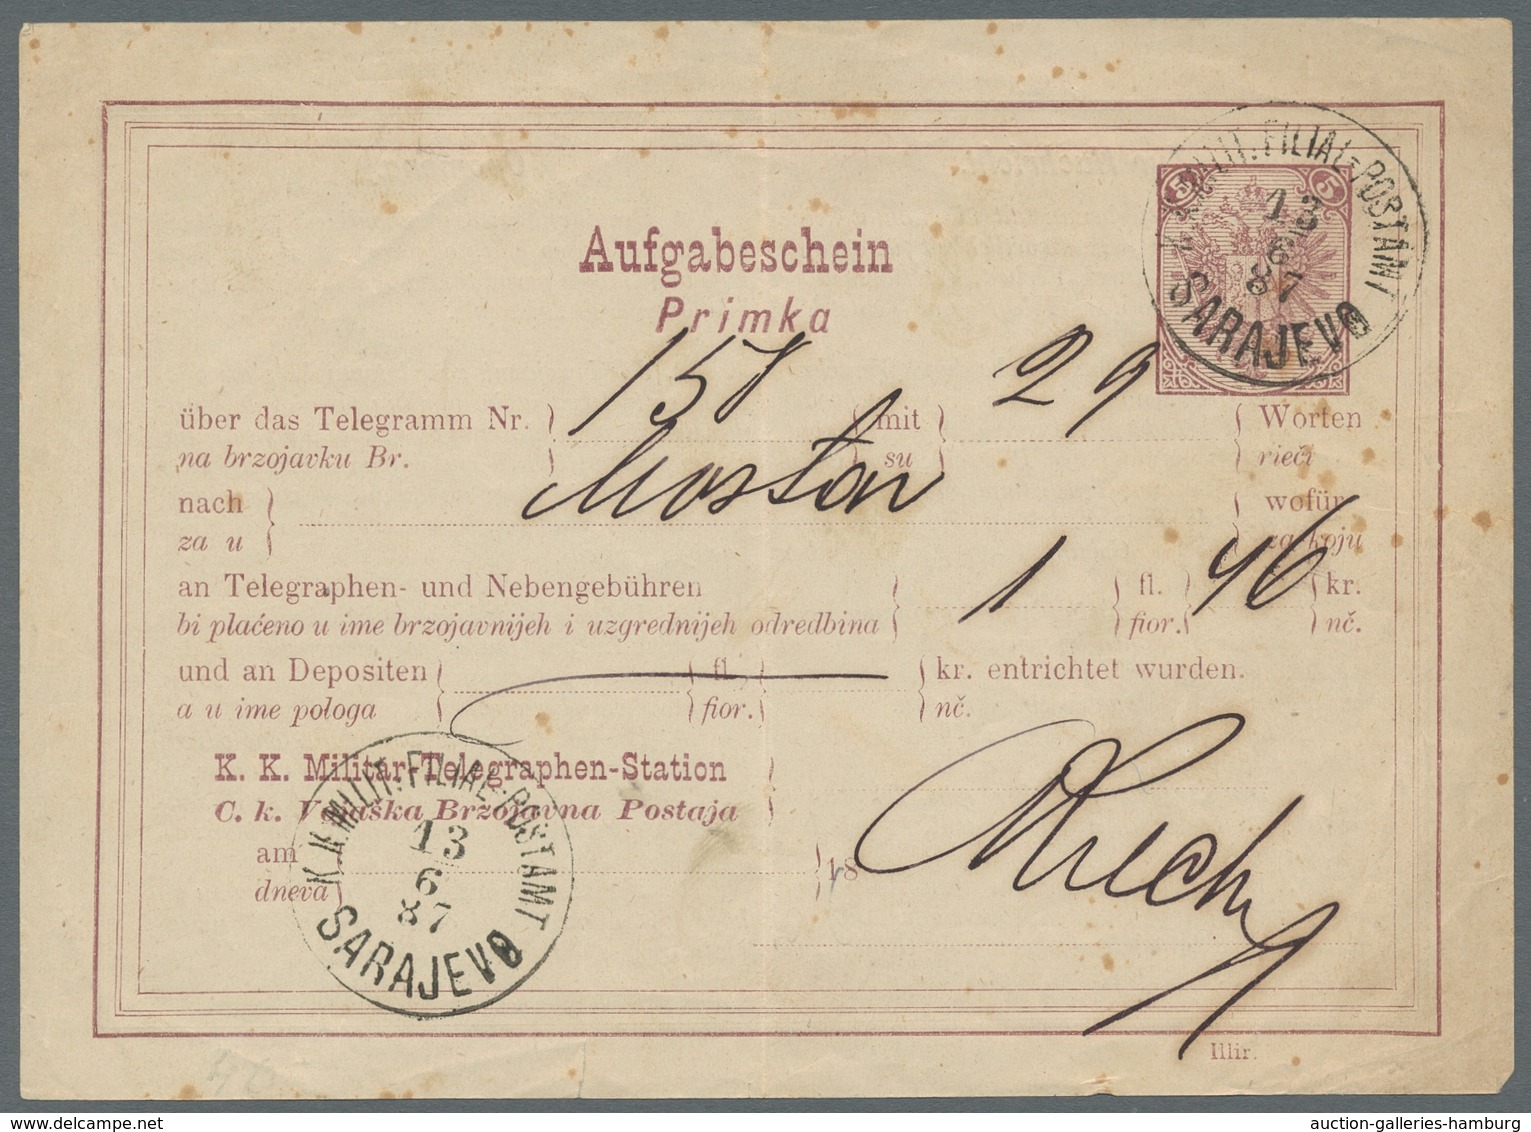 Bosnien und Herzegowina (Österreich 1879/1918): 1894-1918, high-quality collection of postage due st